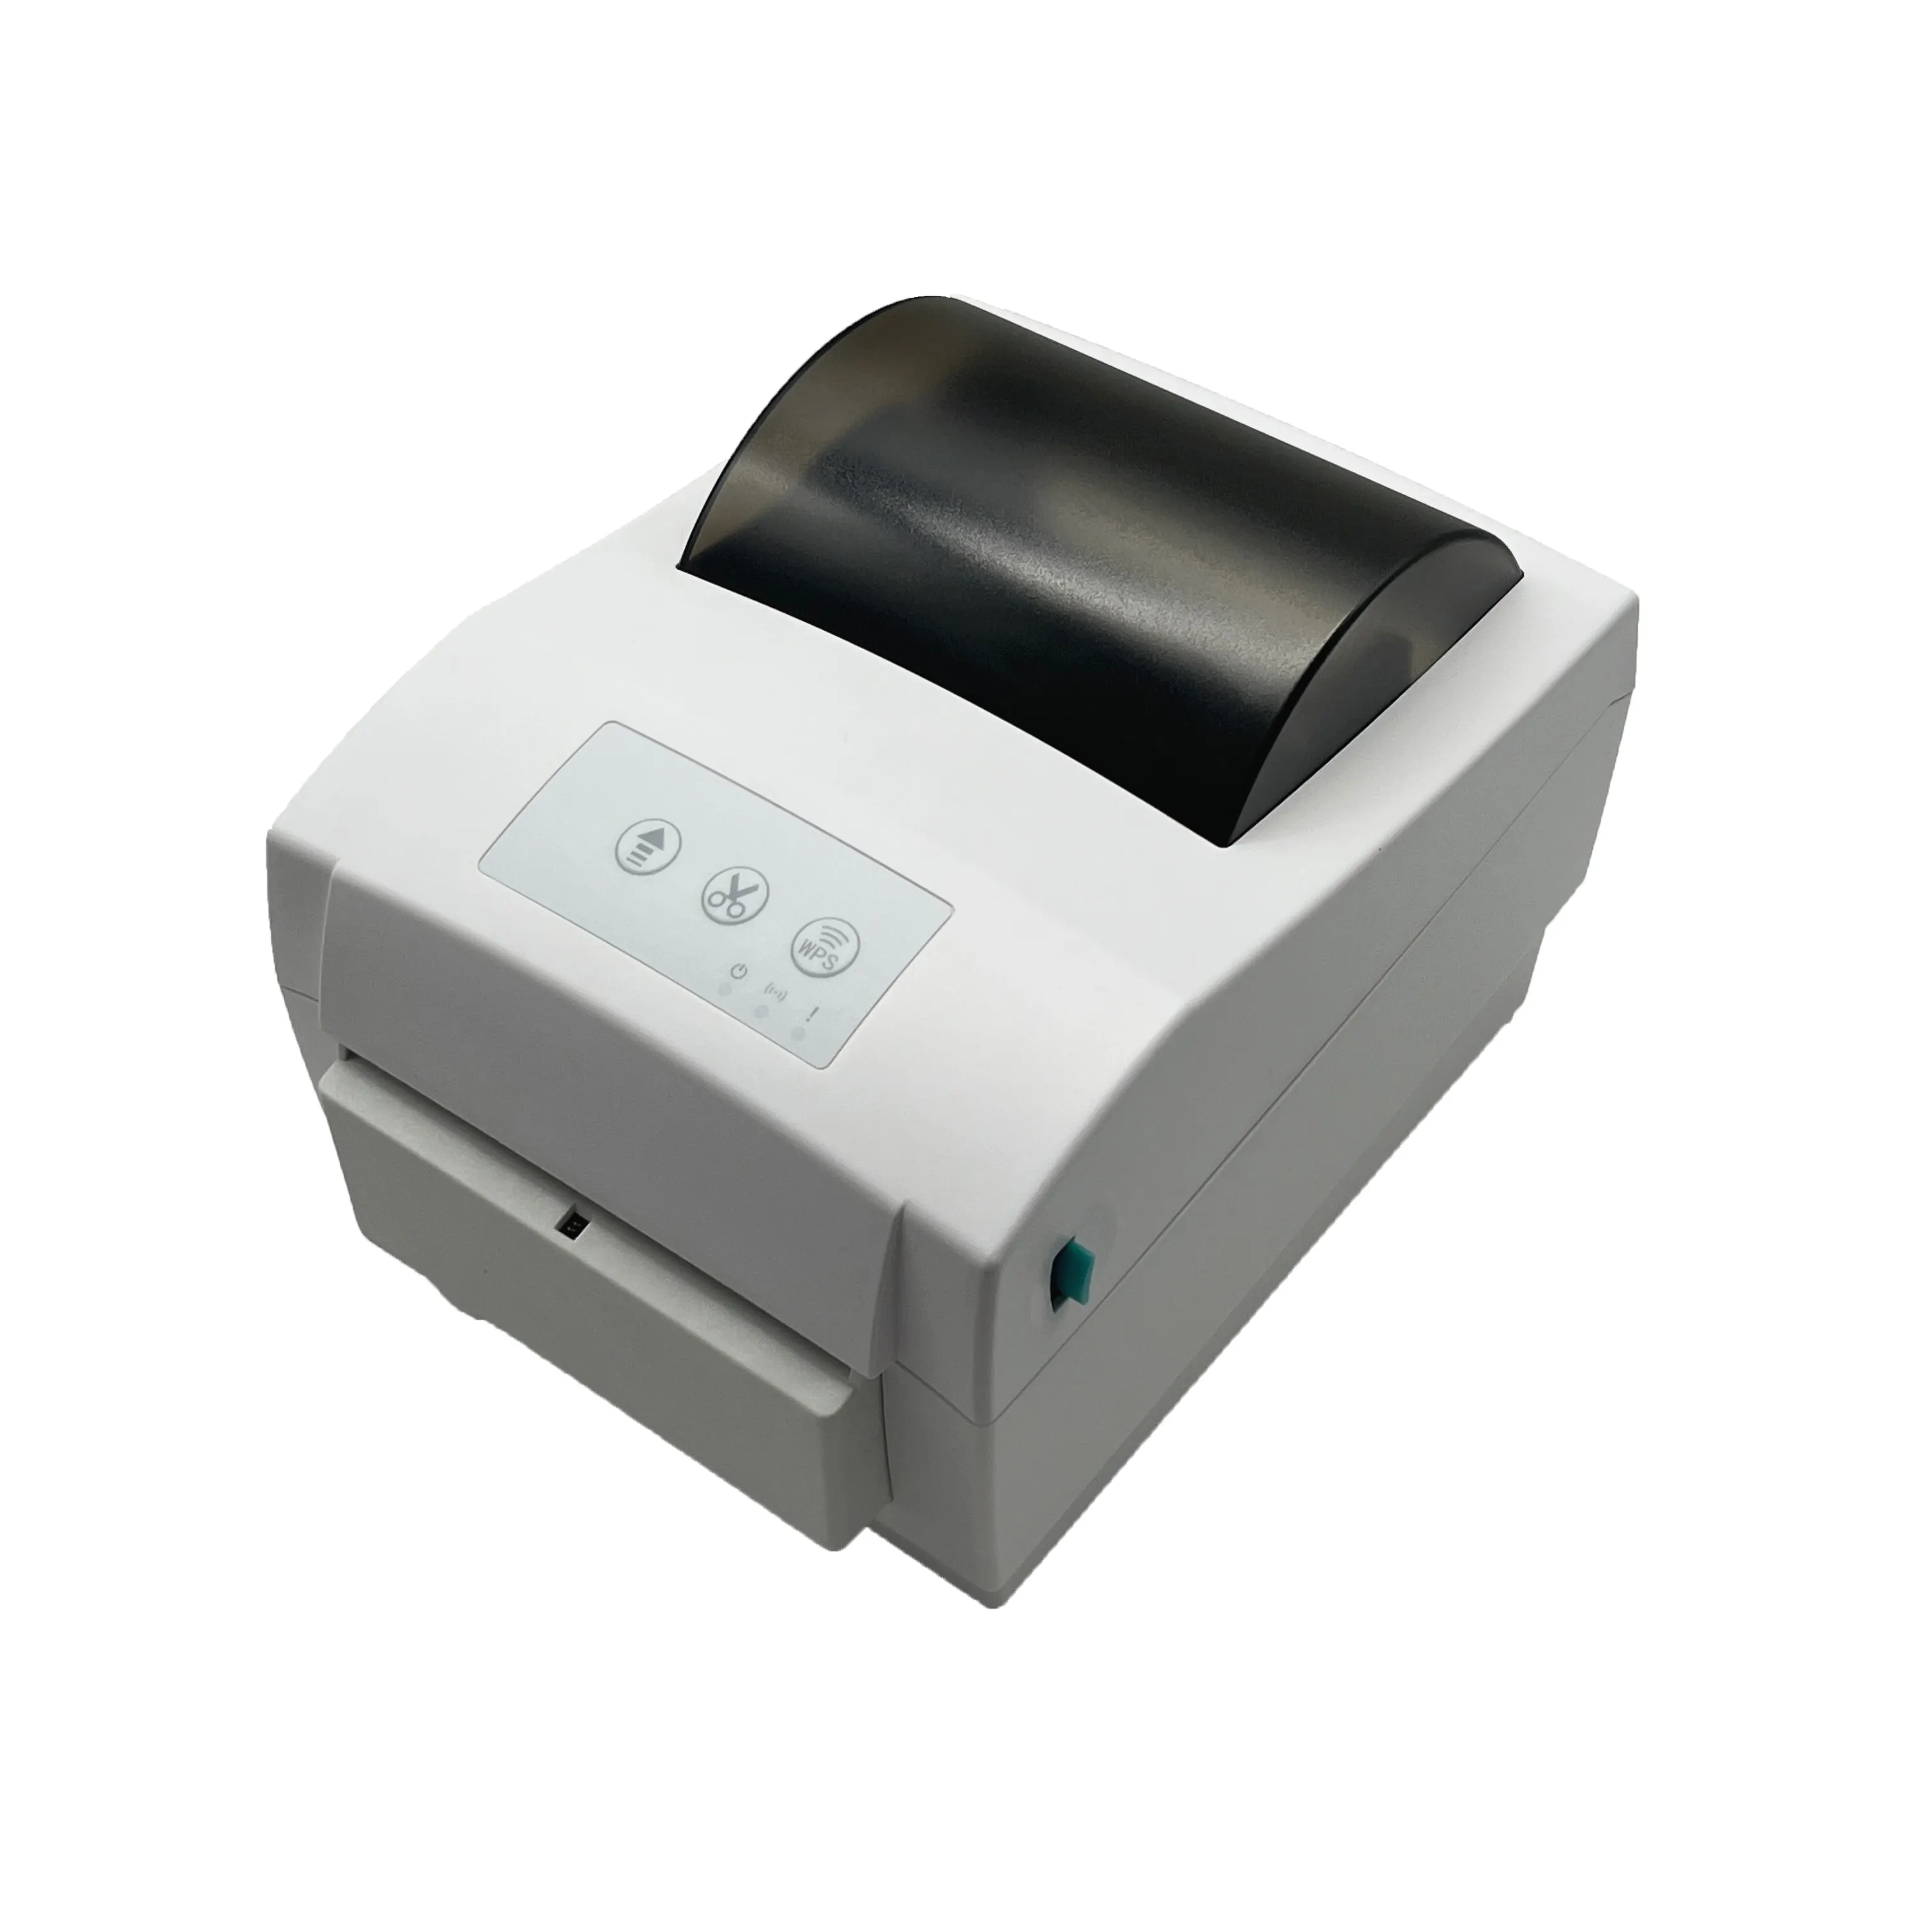 Impressora térmica de etiquetas com corte automático, impressora bluetooth de 4 polegadas, código de barras, etiqueta, etiqueta, 110mm, wifi, 4x6